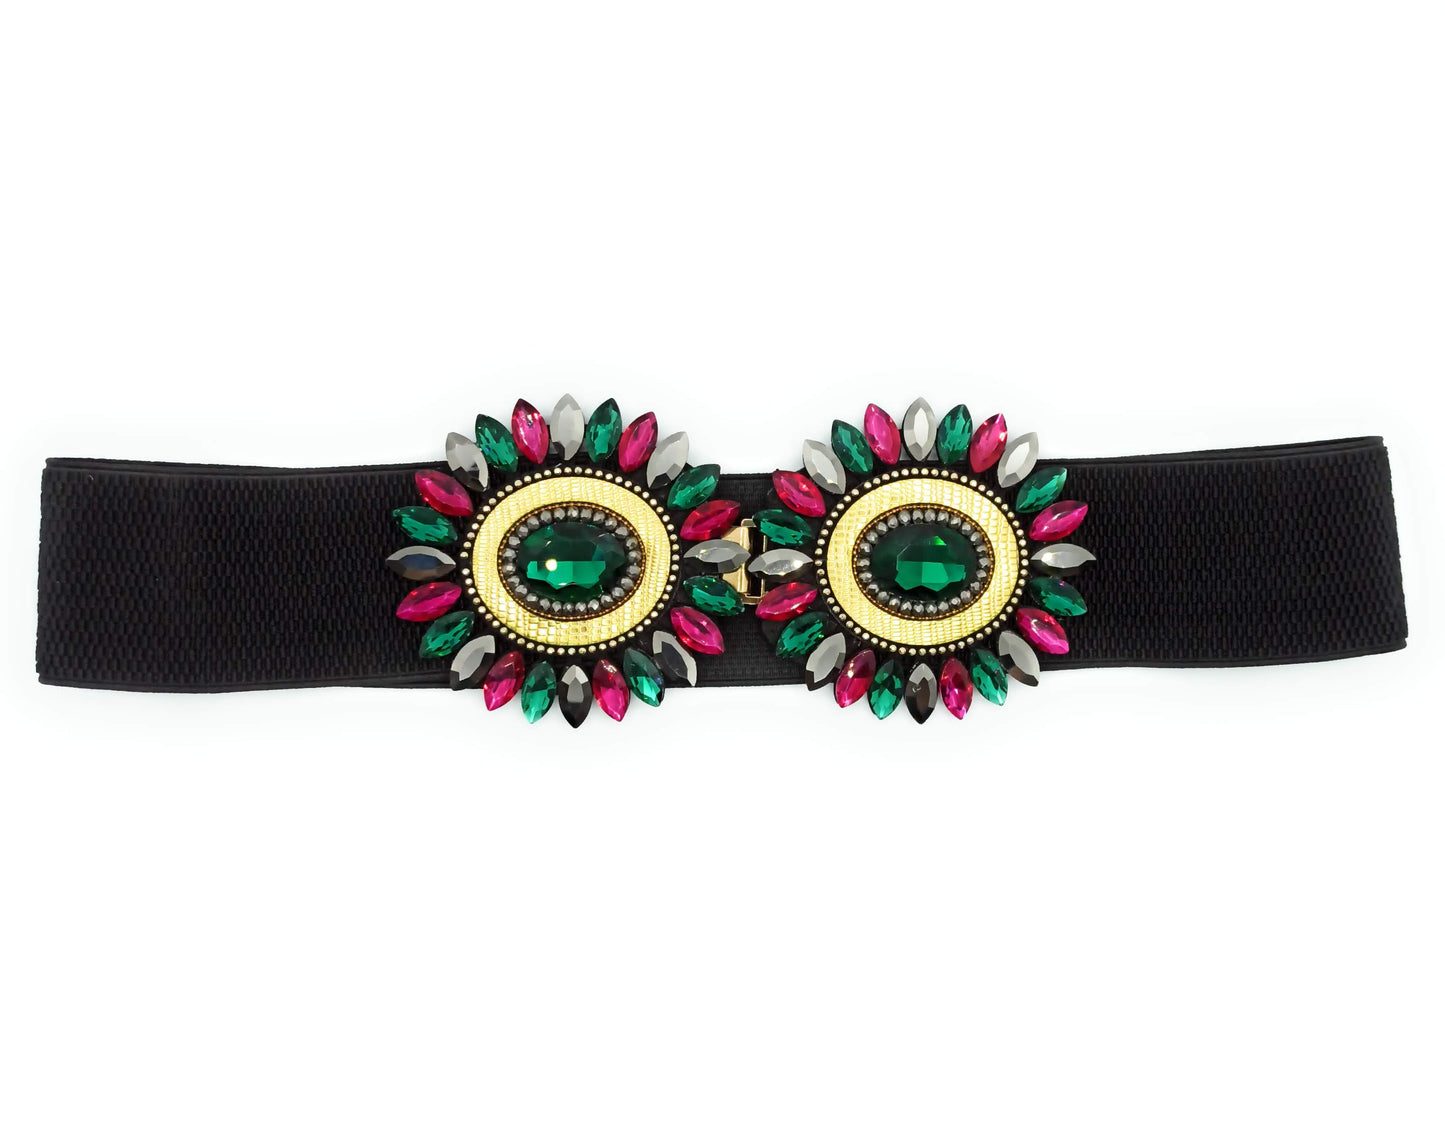 Cinturón Elástico Cristales · Fucsia Verde Esmeralda